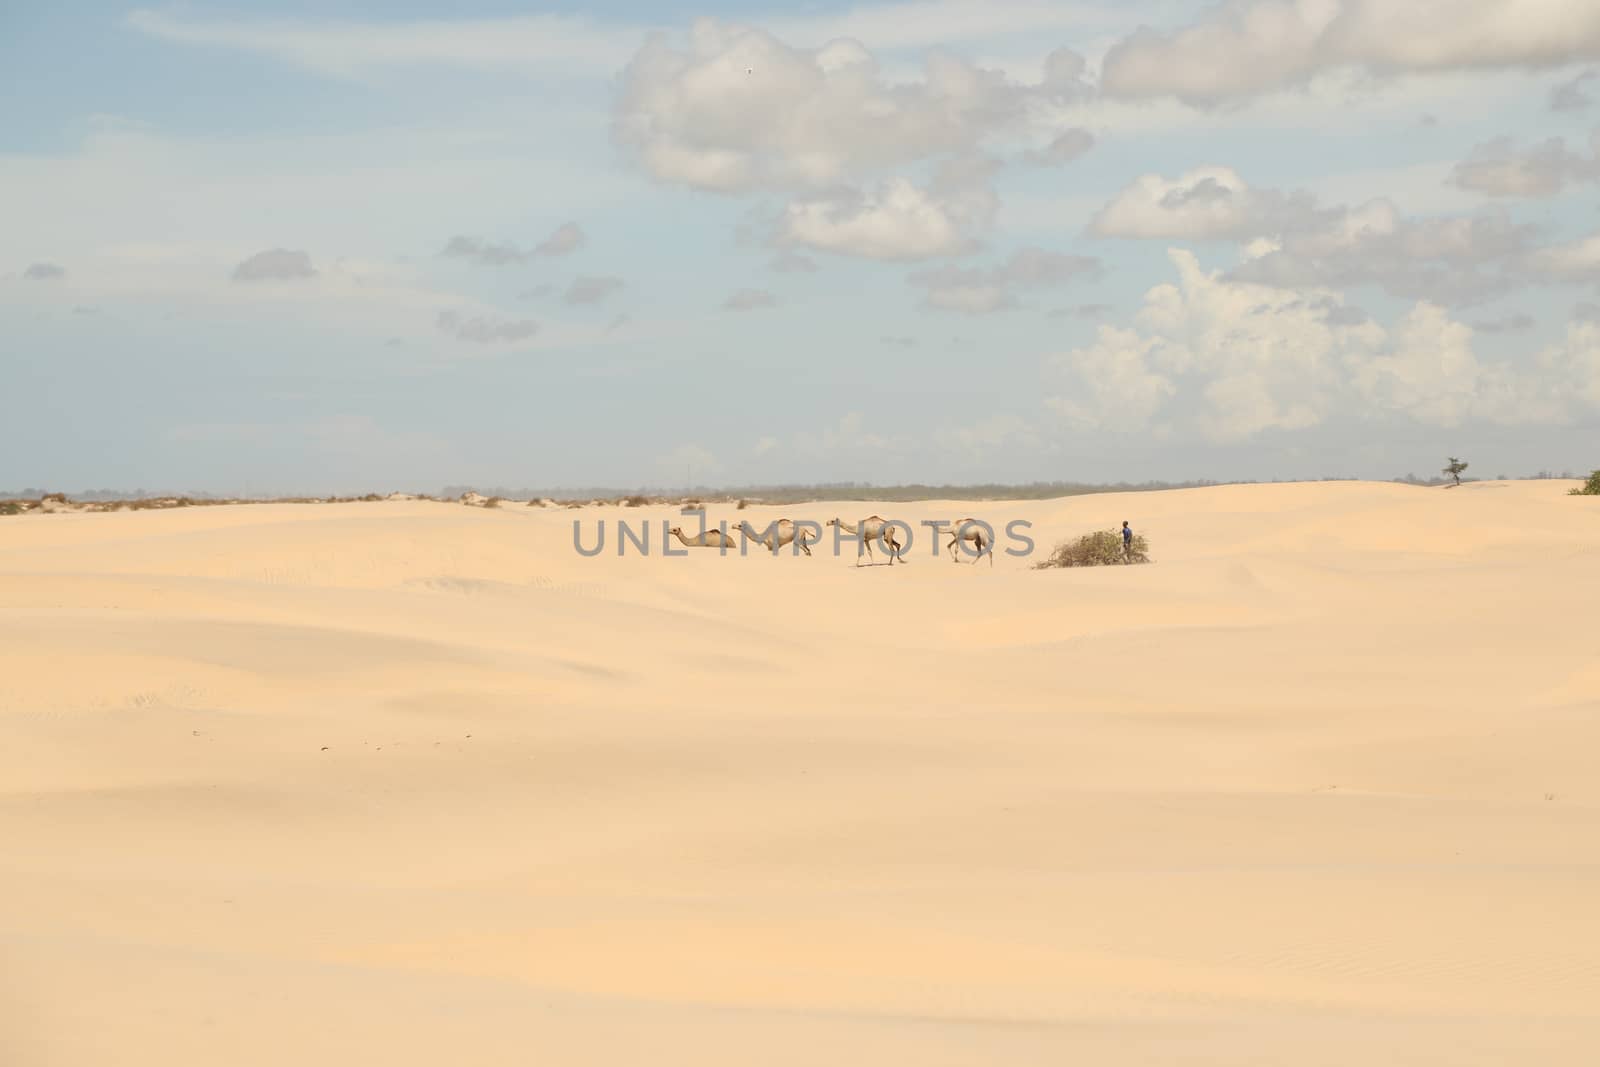 Camel in a Desert by rajastills